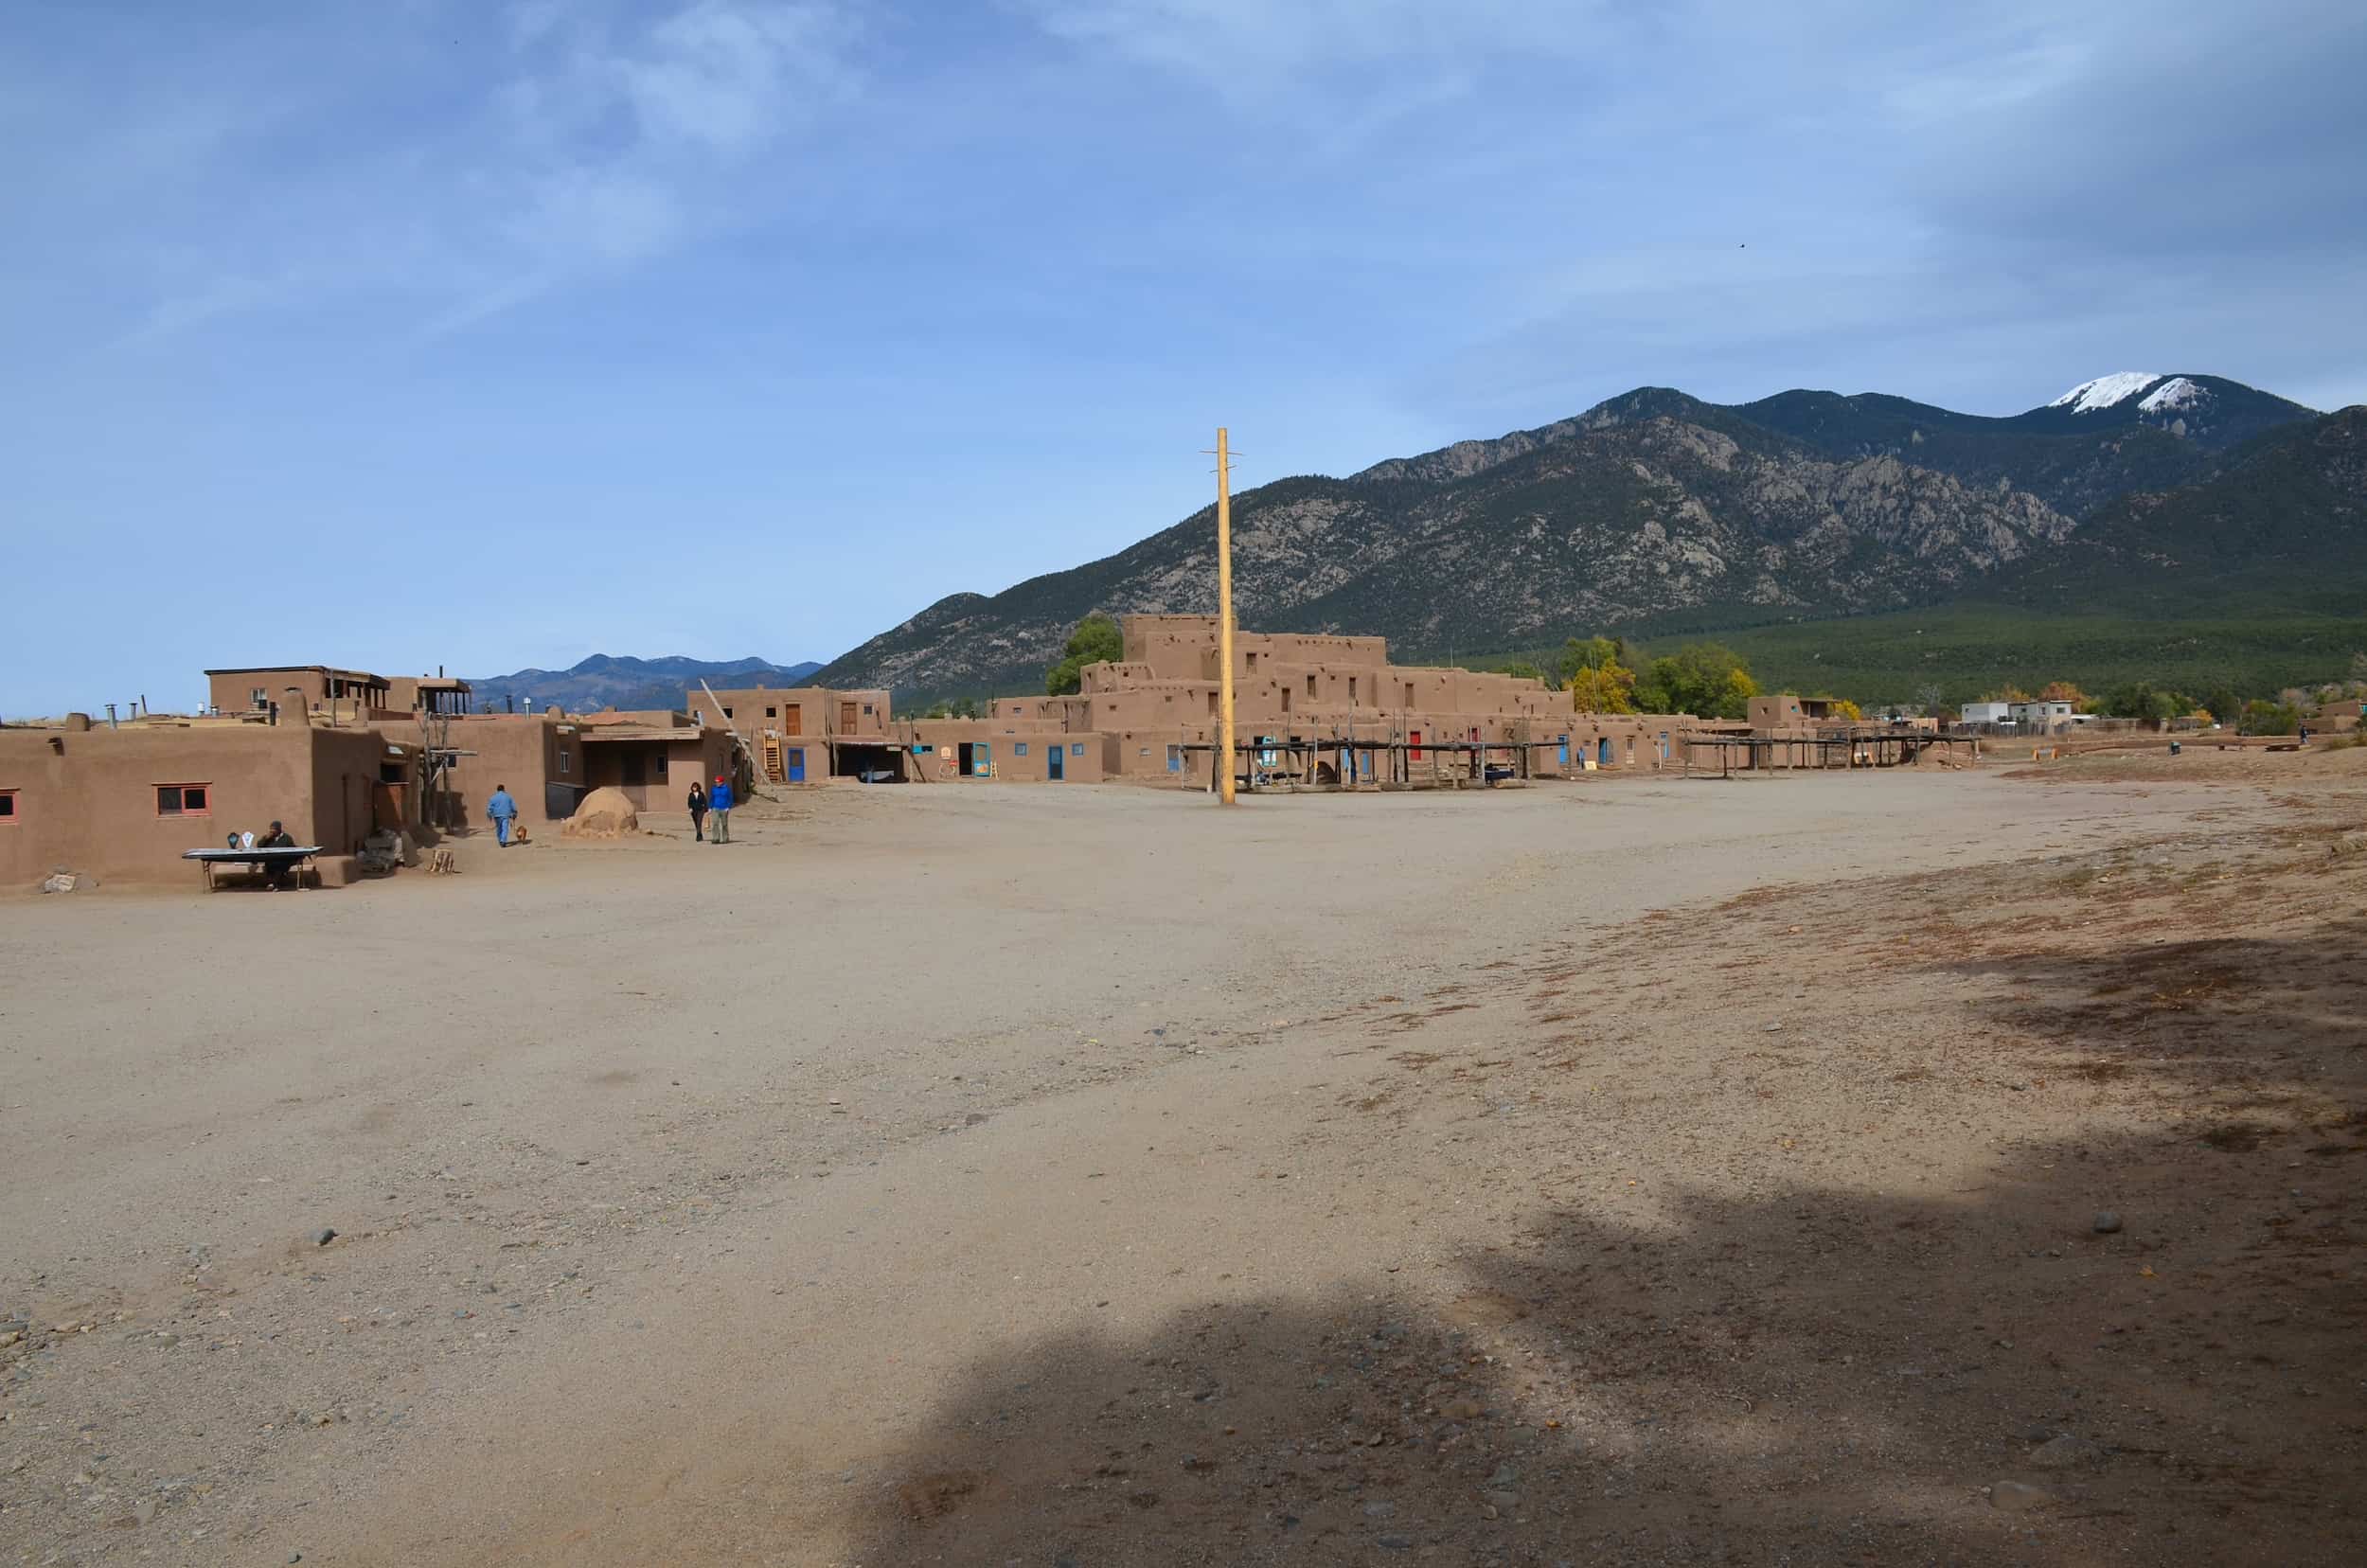 Taos Pueblo in Taos, New Mexico